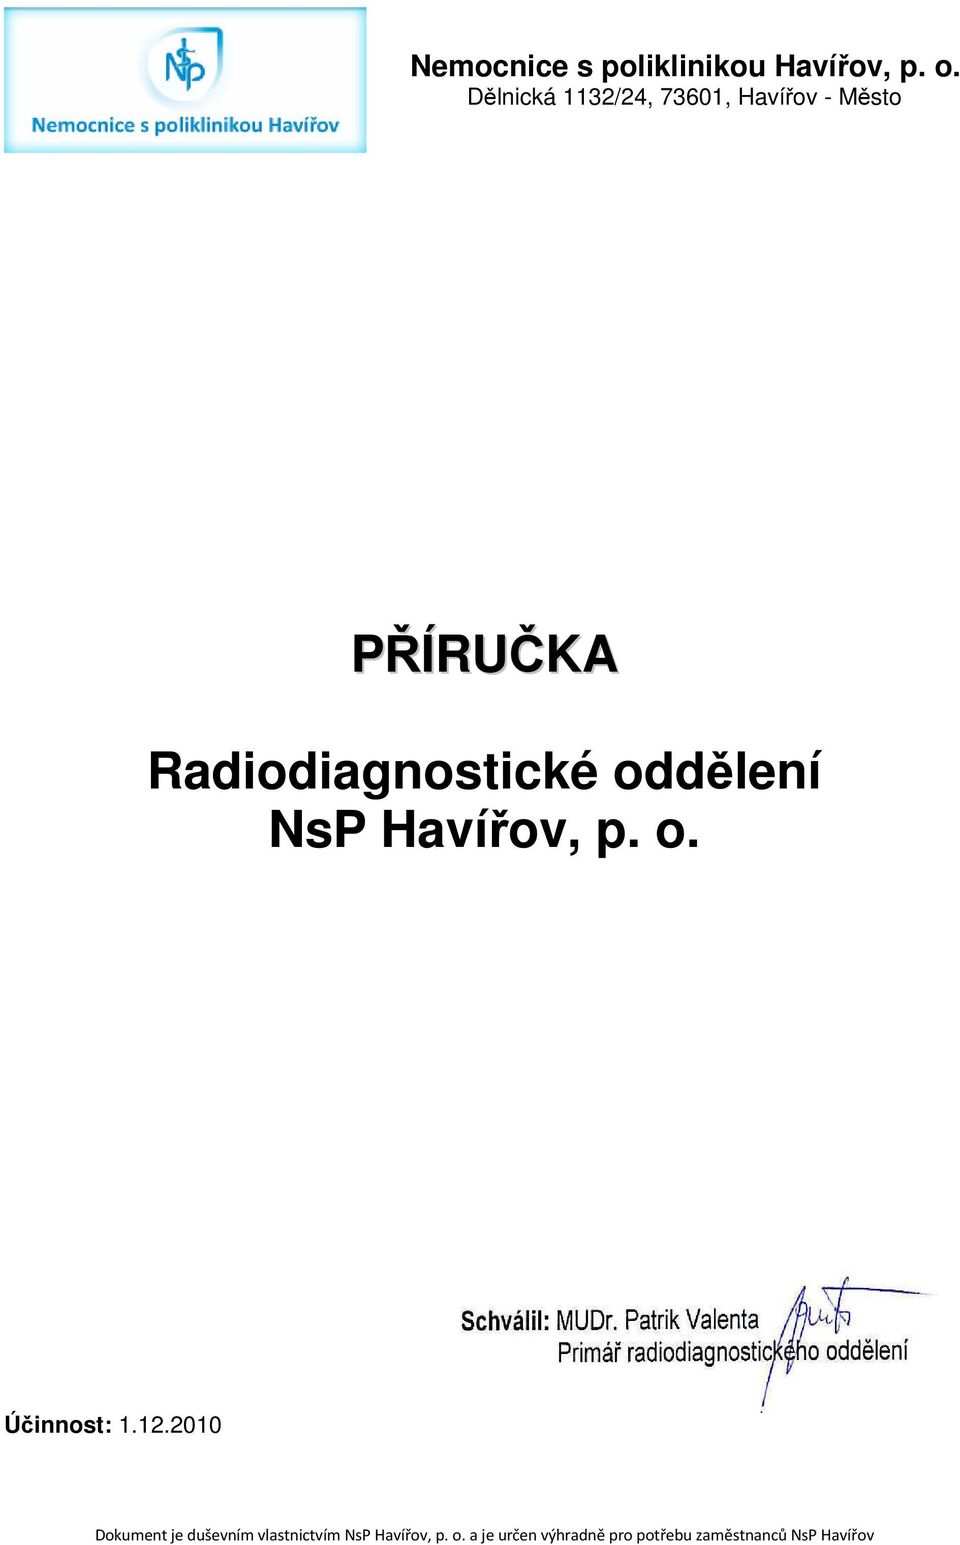 Radidiagnstické ddělení NsP Havířv, p.. Účinnst: 1.12.